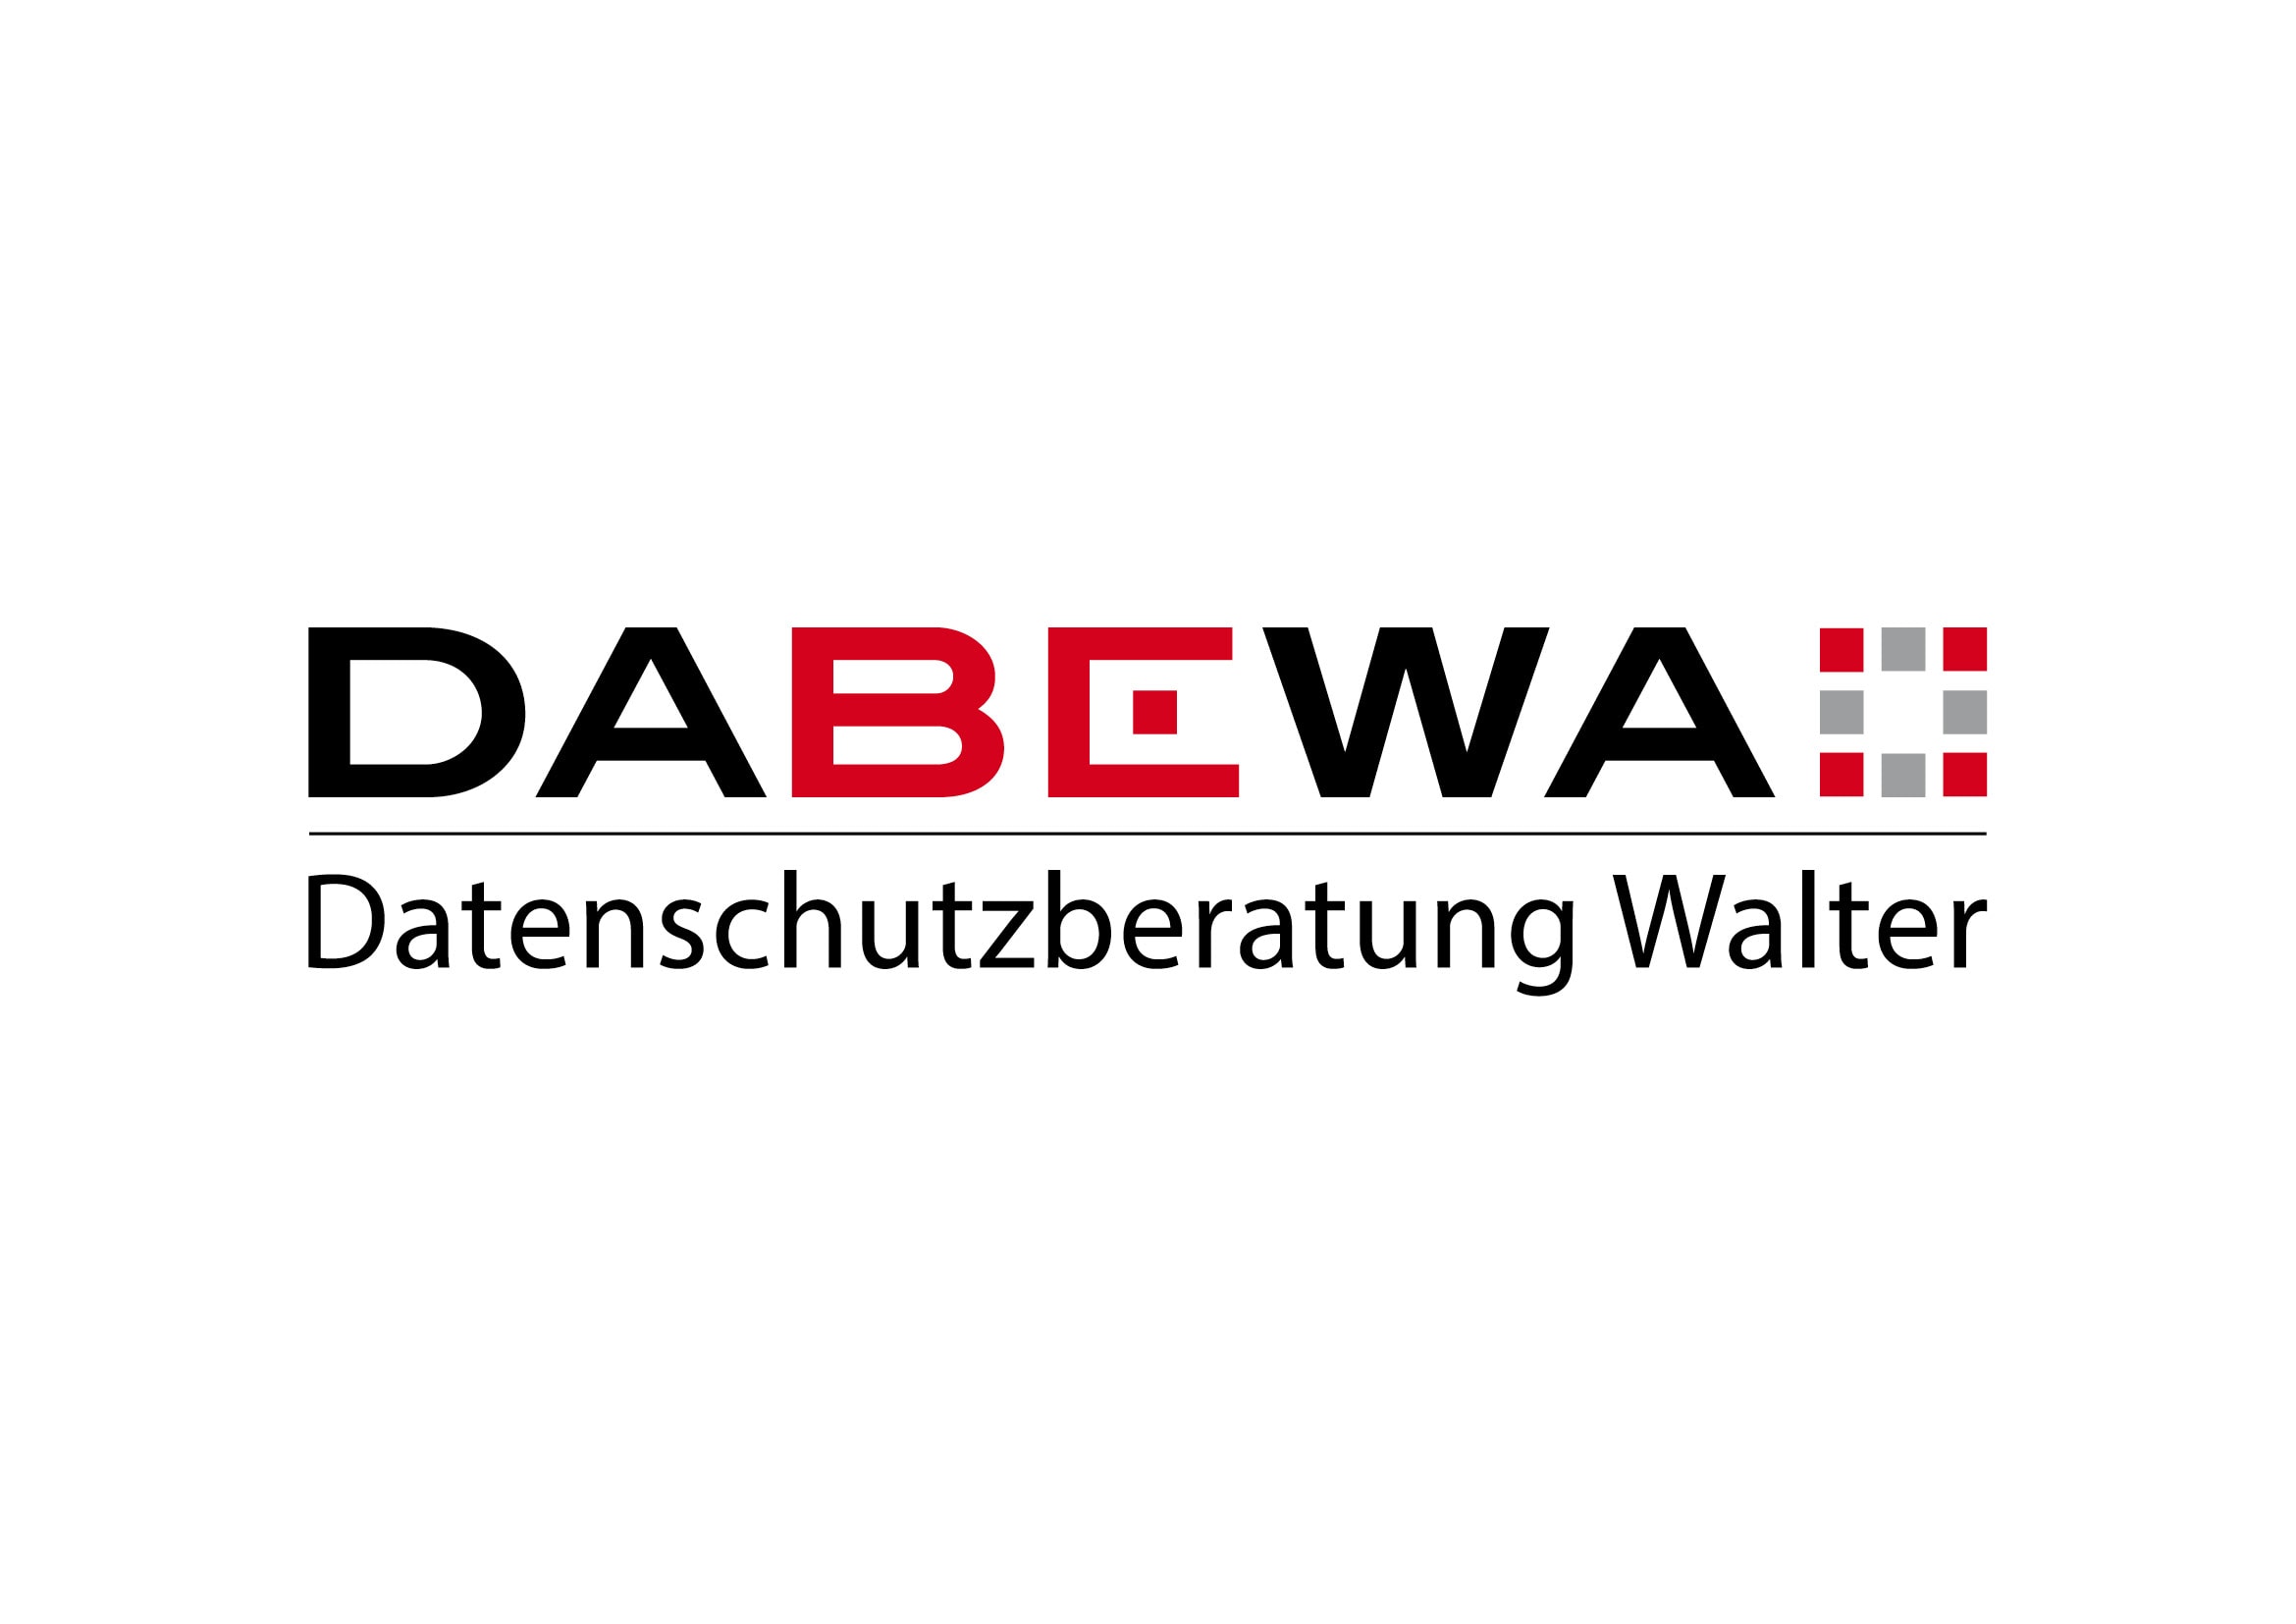 Corporate Design und Webdesign Entwicklung für DABEWA, Datenschutzberatung Bernd Walter aus Karlsruhe durch Grafik-Designer Ronald Wissler